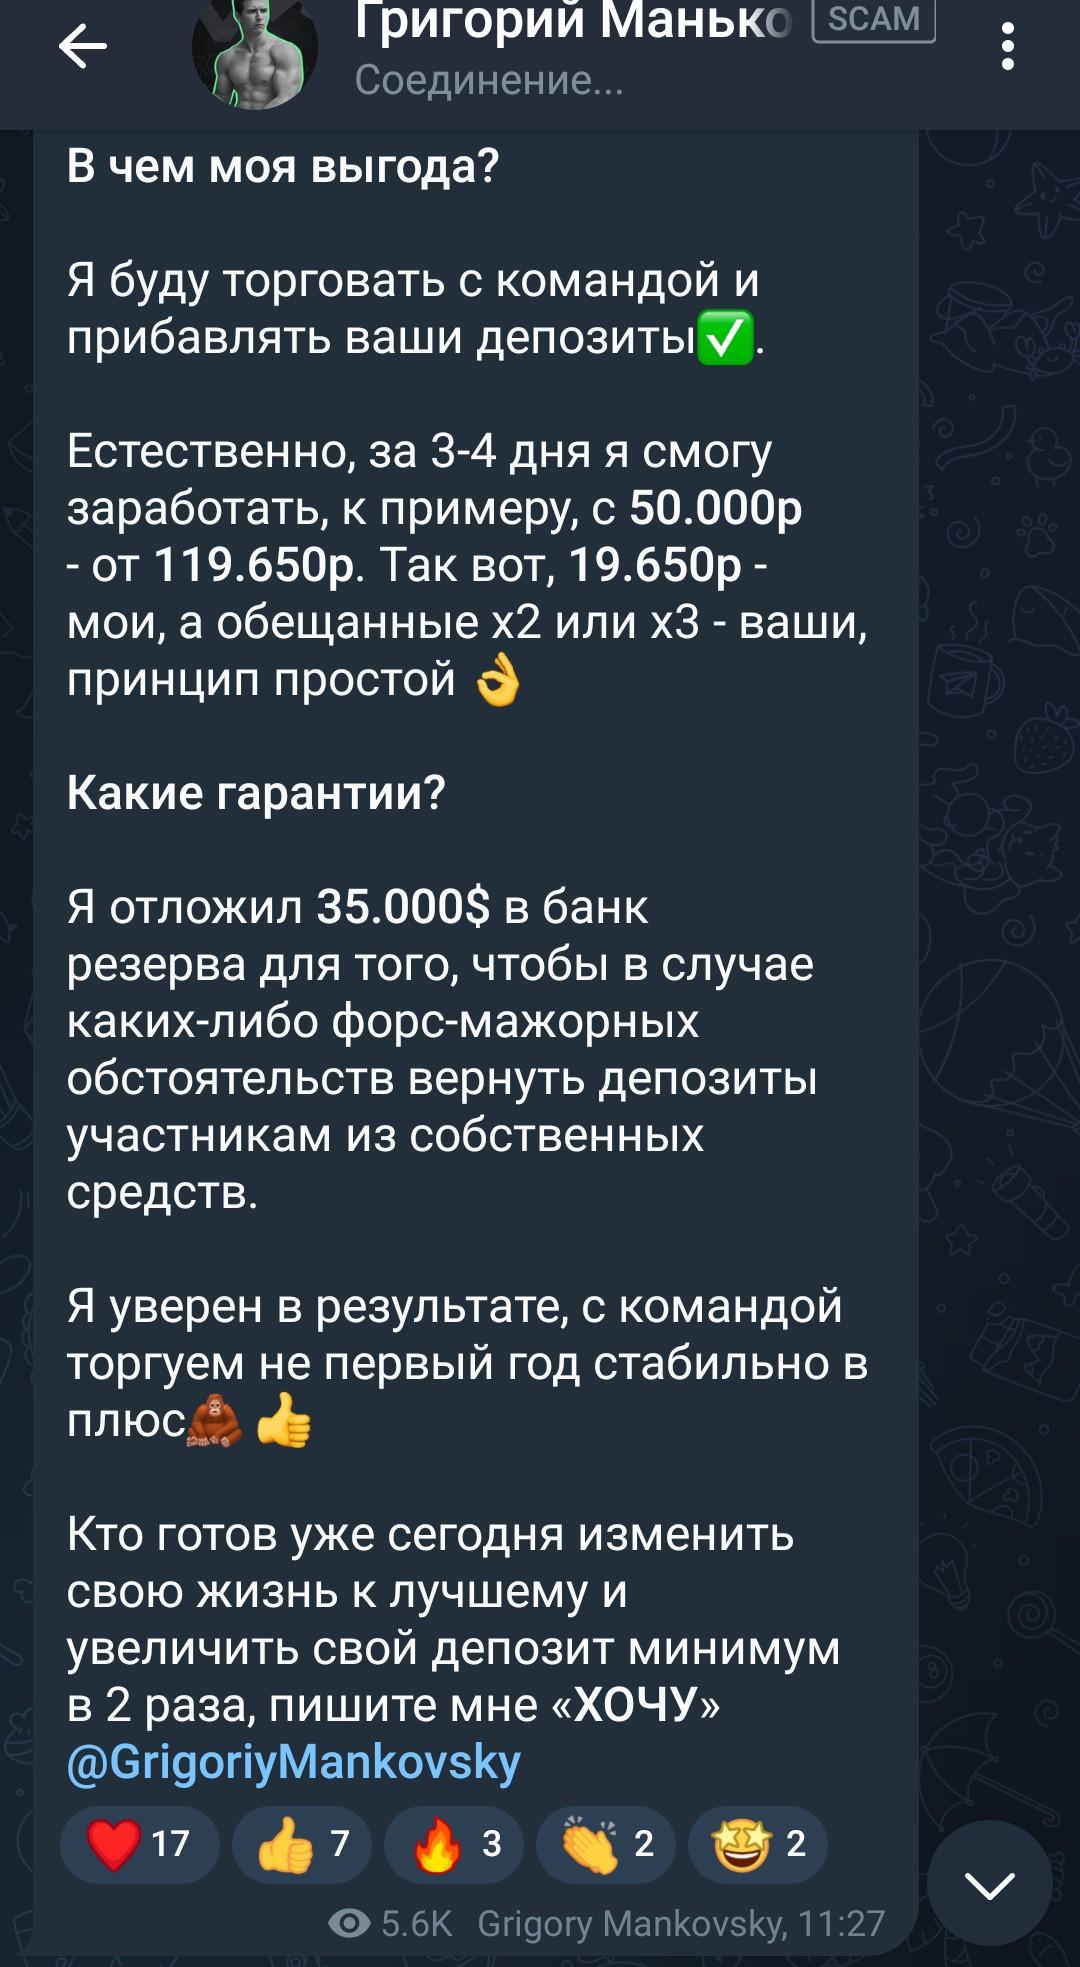 Григорий Маньковский телеграмм